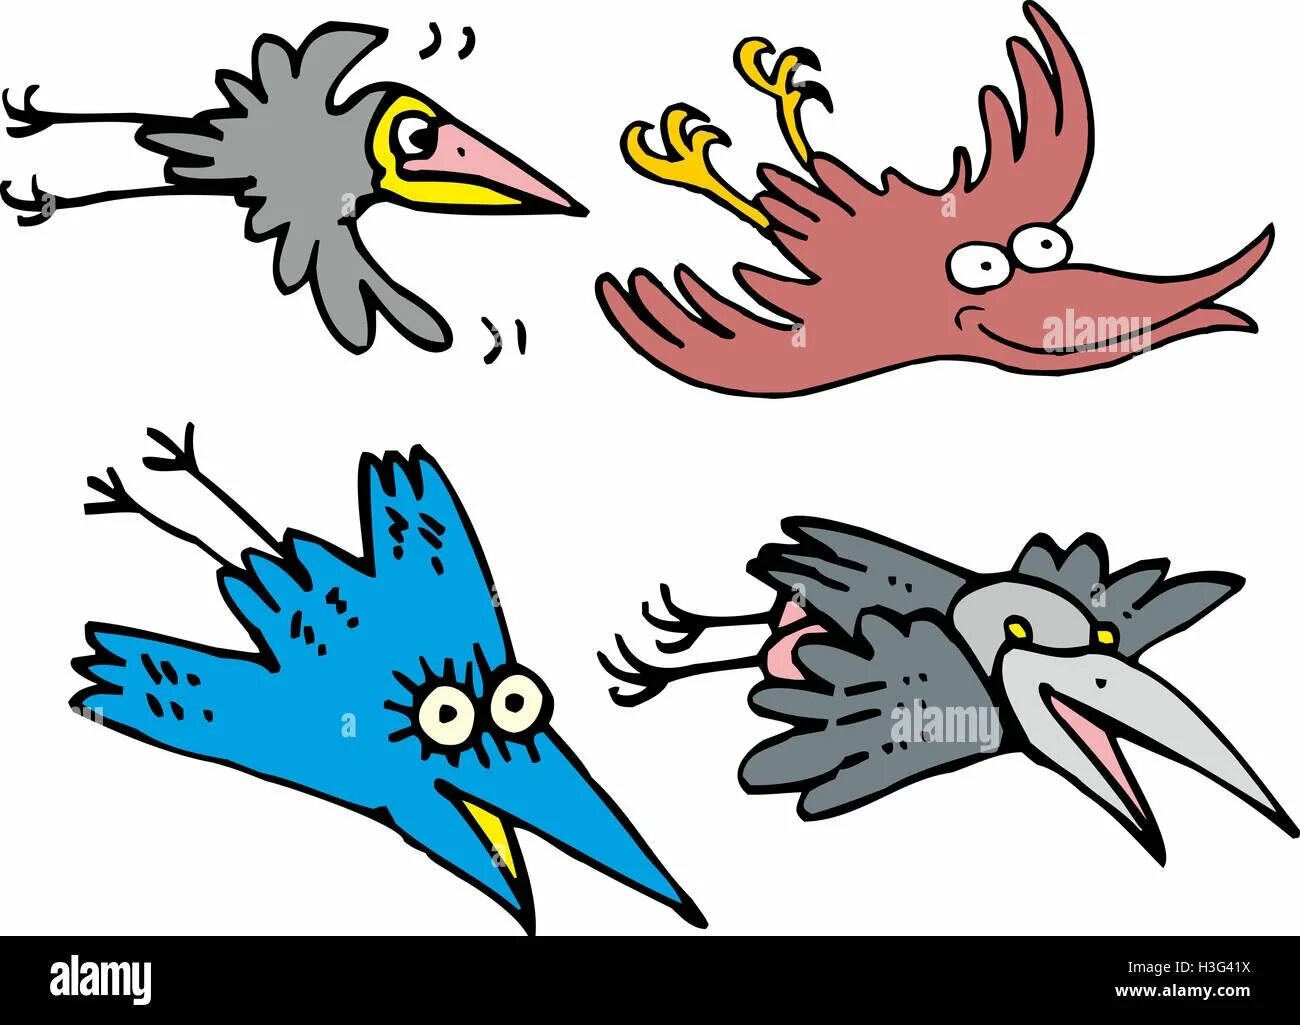 День считания ворон картинки прикольные. Ворона мультяшная. Ворона в мультяшном стиле. Карикатурные птицы. Смешная ворона рисунок.